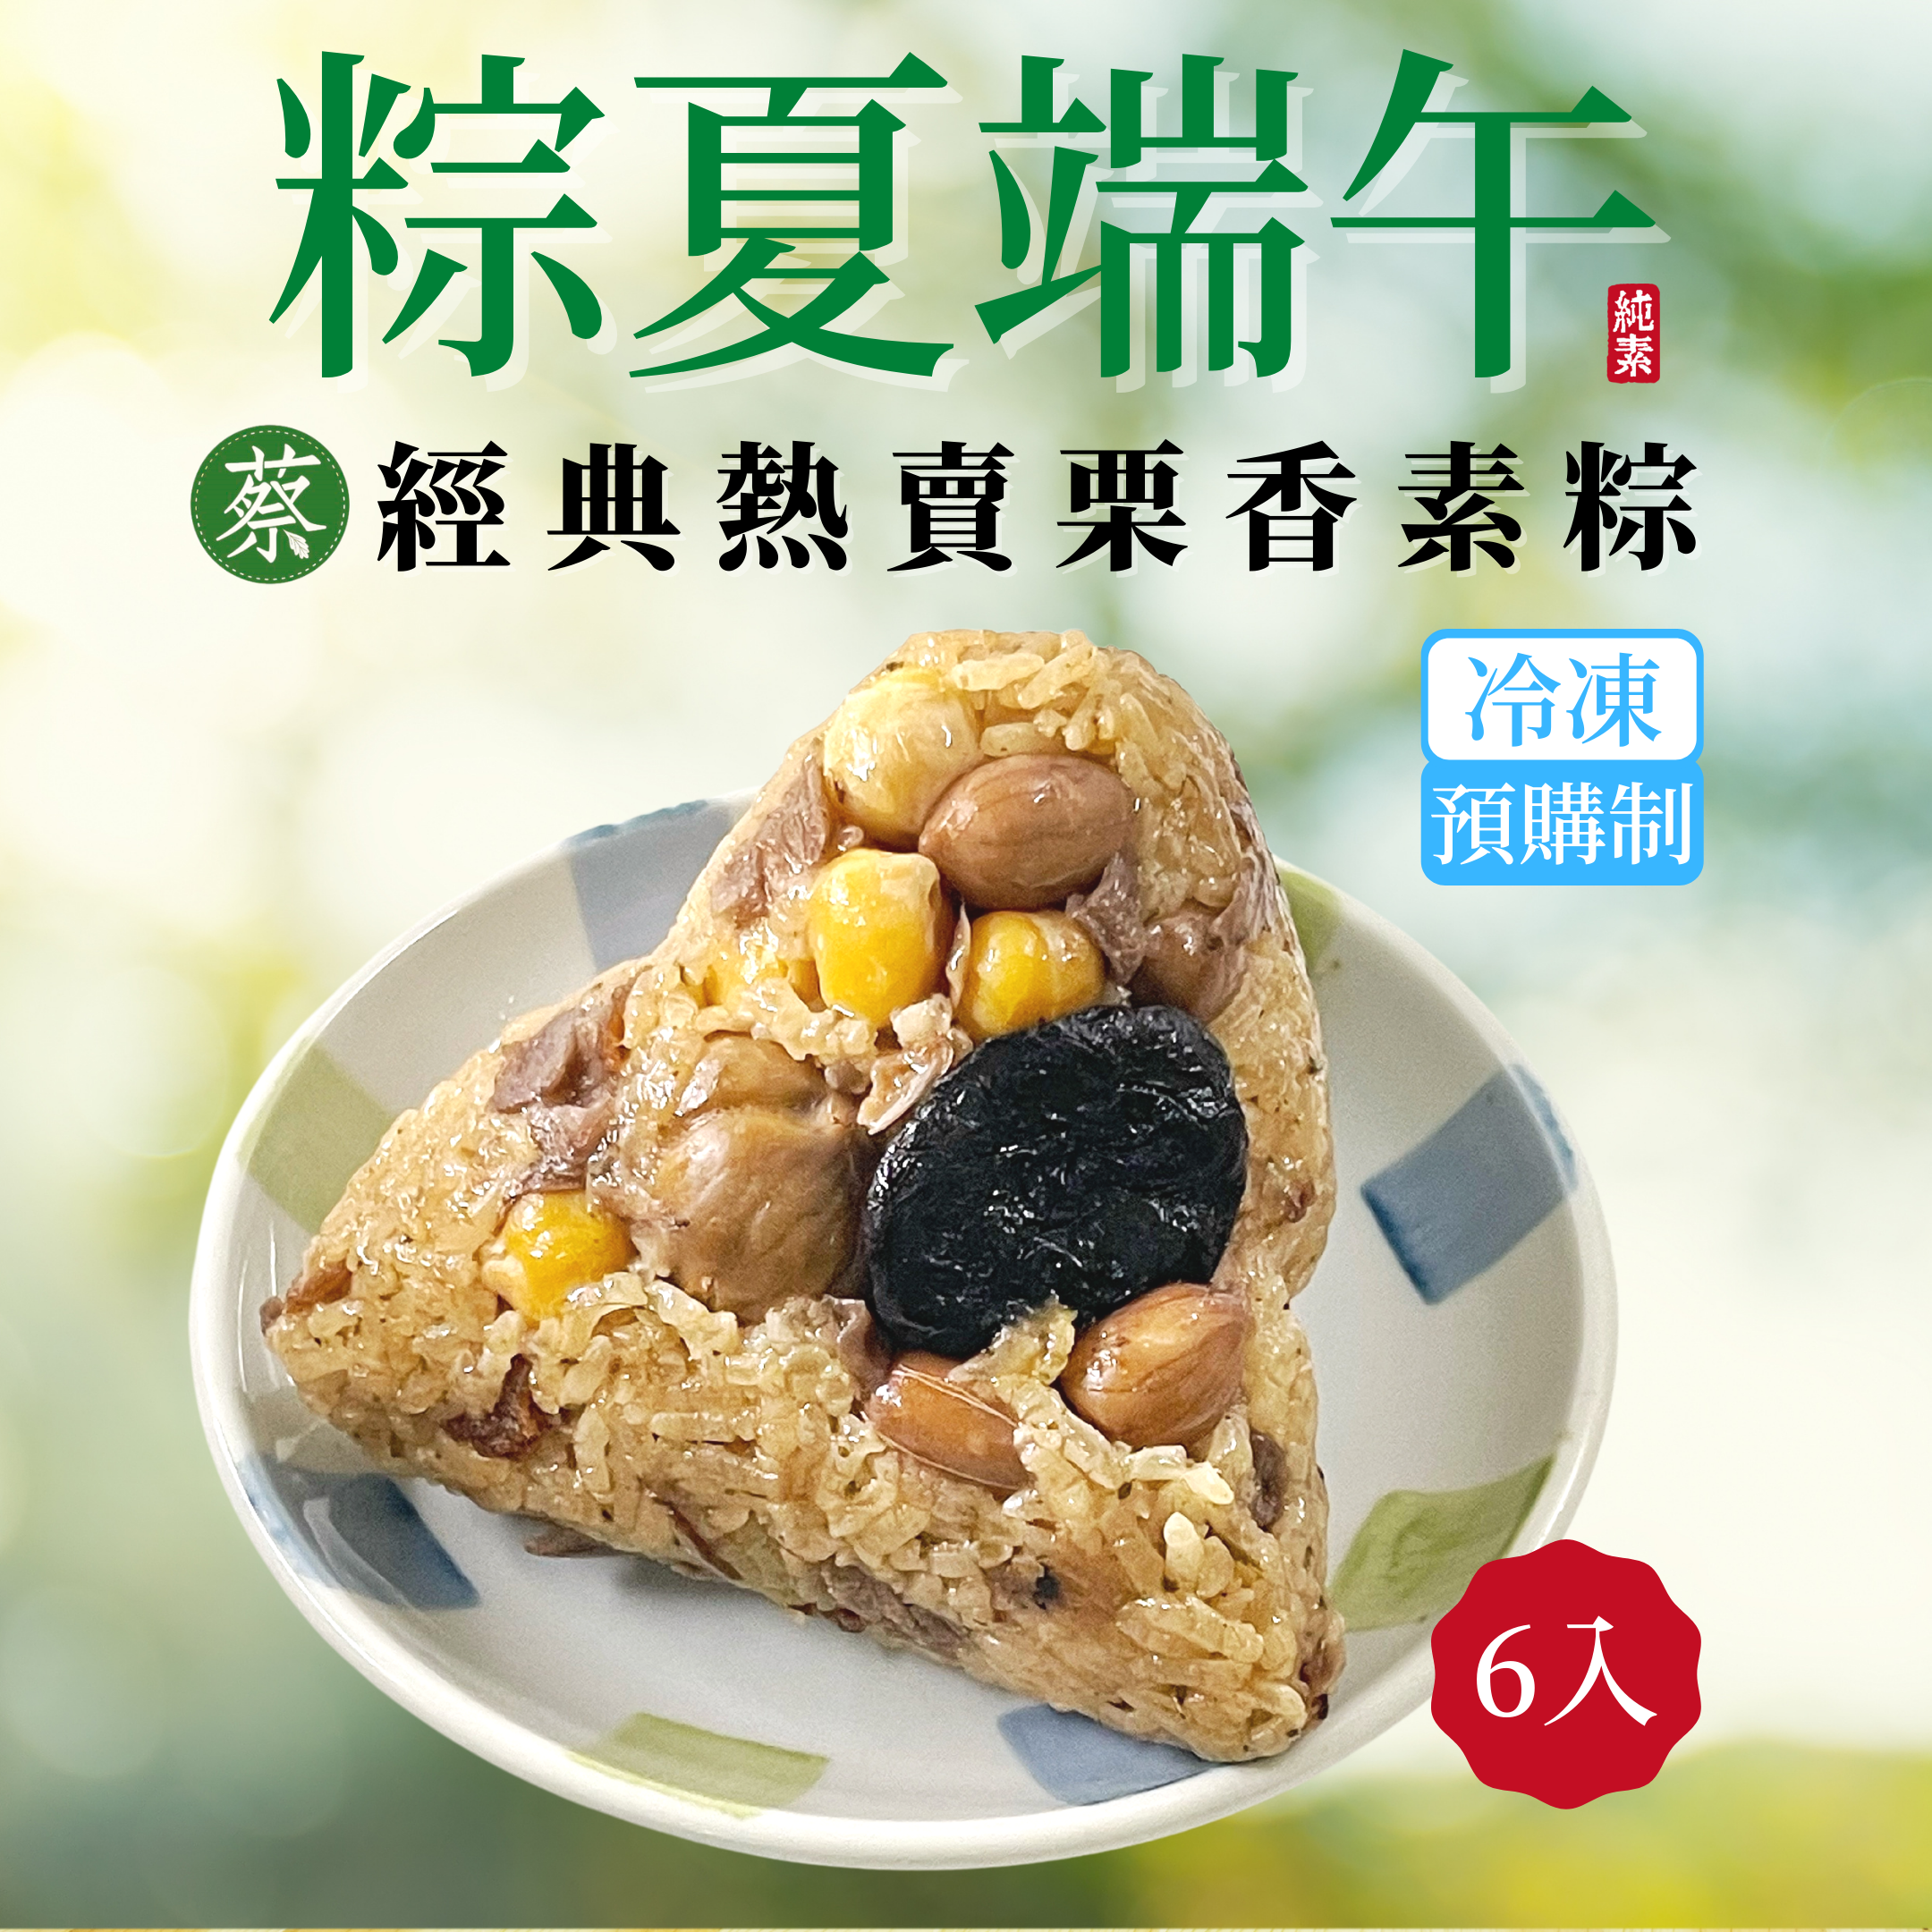 《經典熱賣栗香素粽》香Q不軟糯的北部粽口味，使用台灣糯米，揮灑上胡椒粉和五香粉的香氣均勻結合，加上綿密甘甜的栗子，鹹香